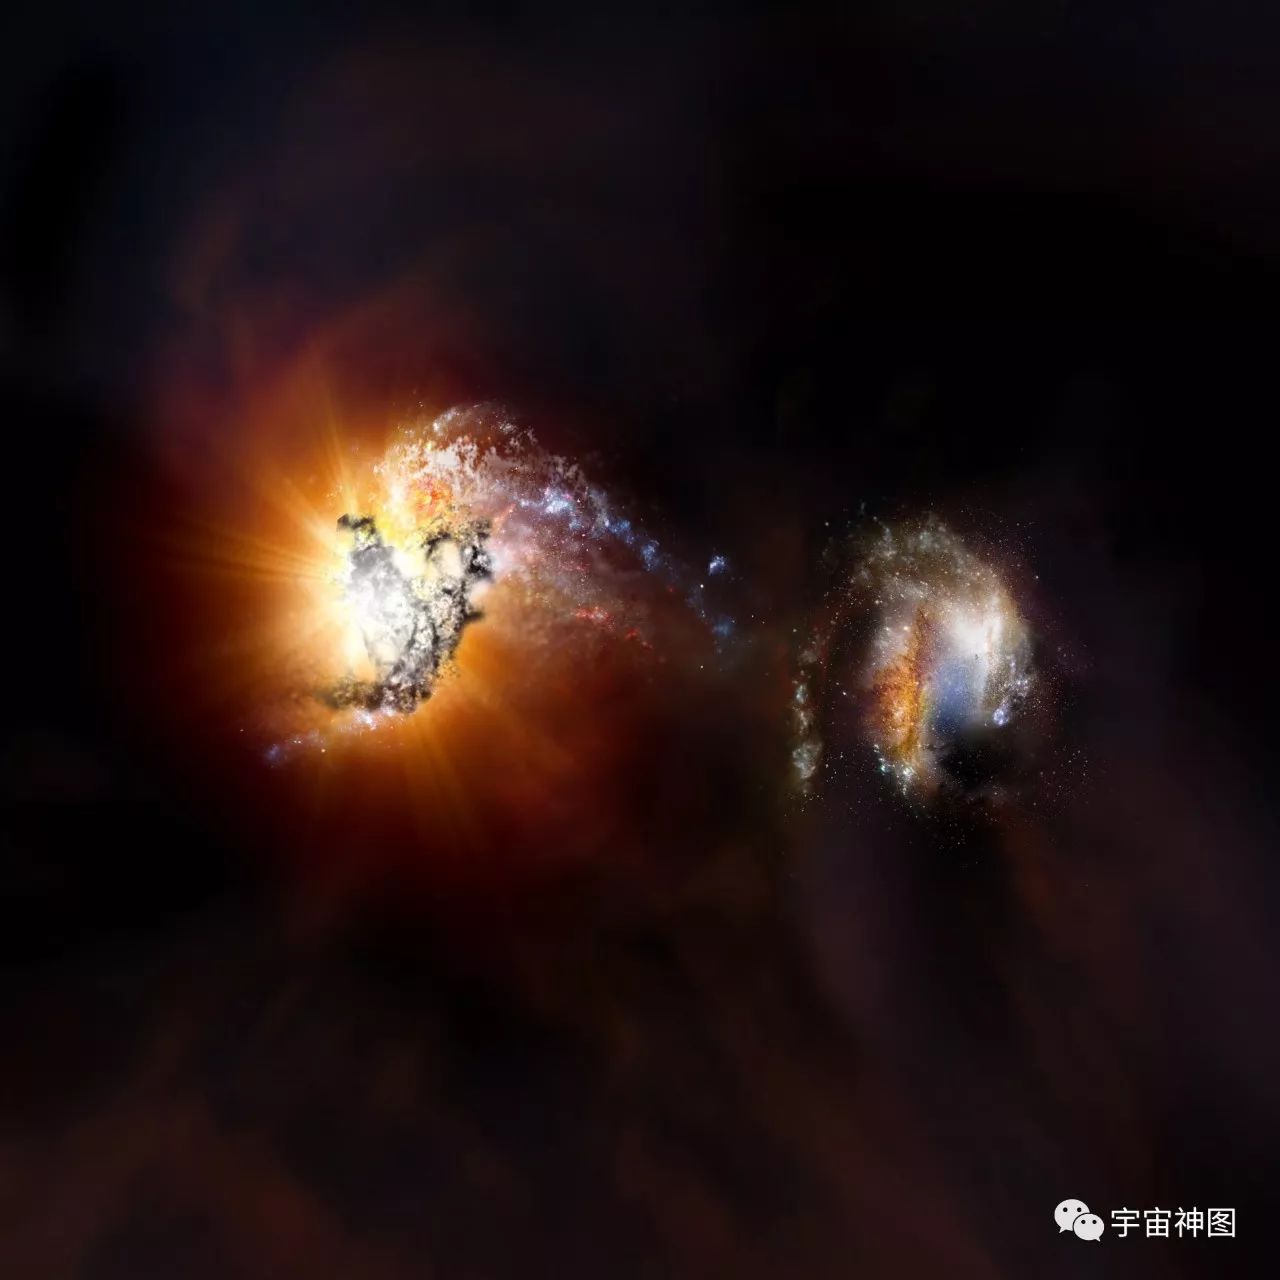 天文学家最新见证:宇宙最暴烈的星系合并事件